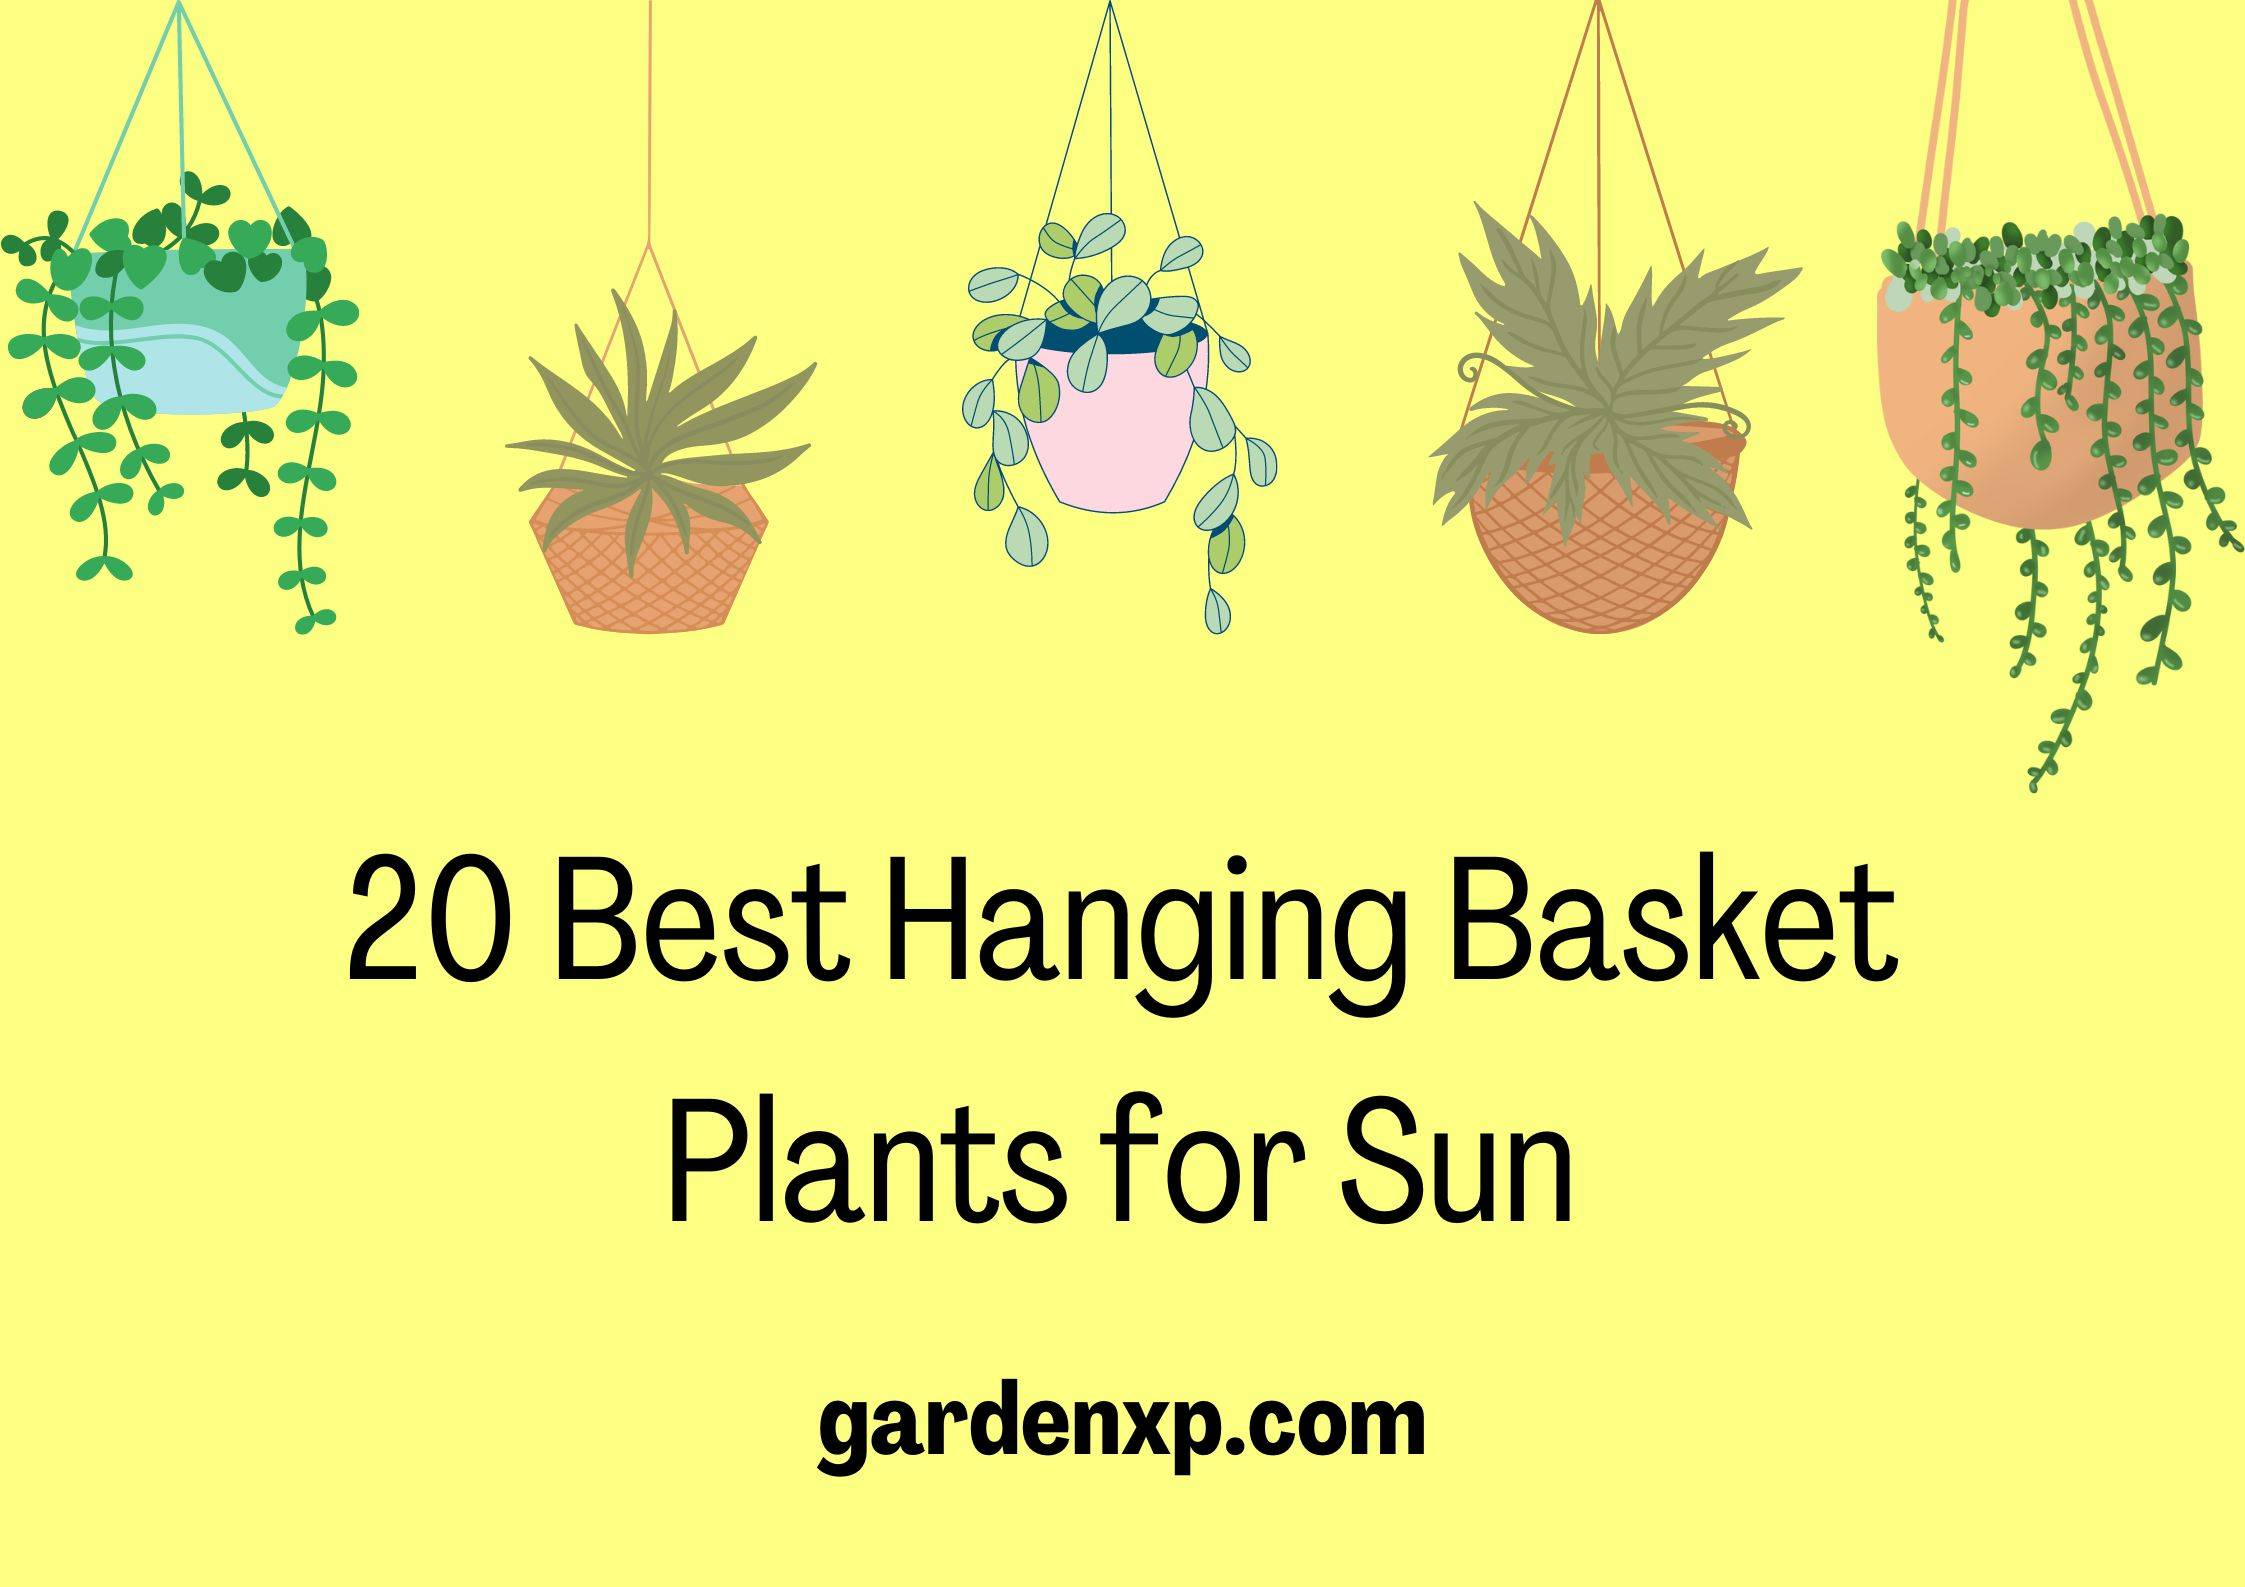 20 Best Hanging Basket Plants for Sun